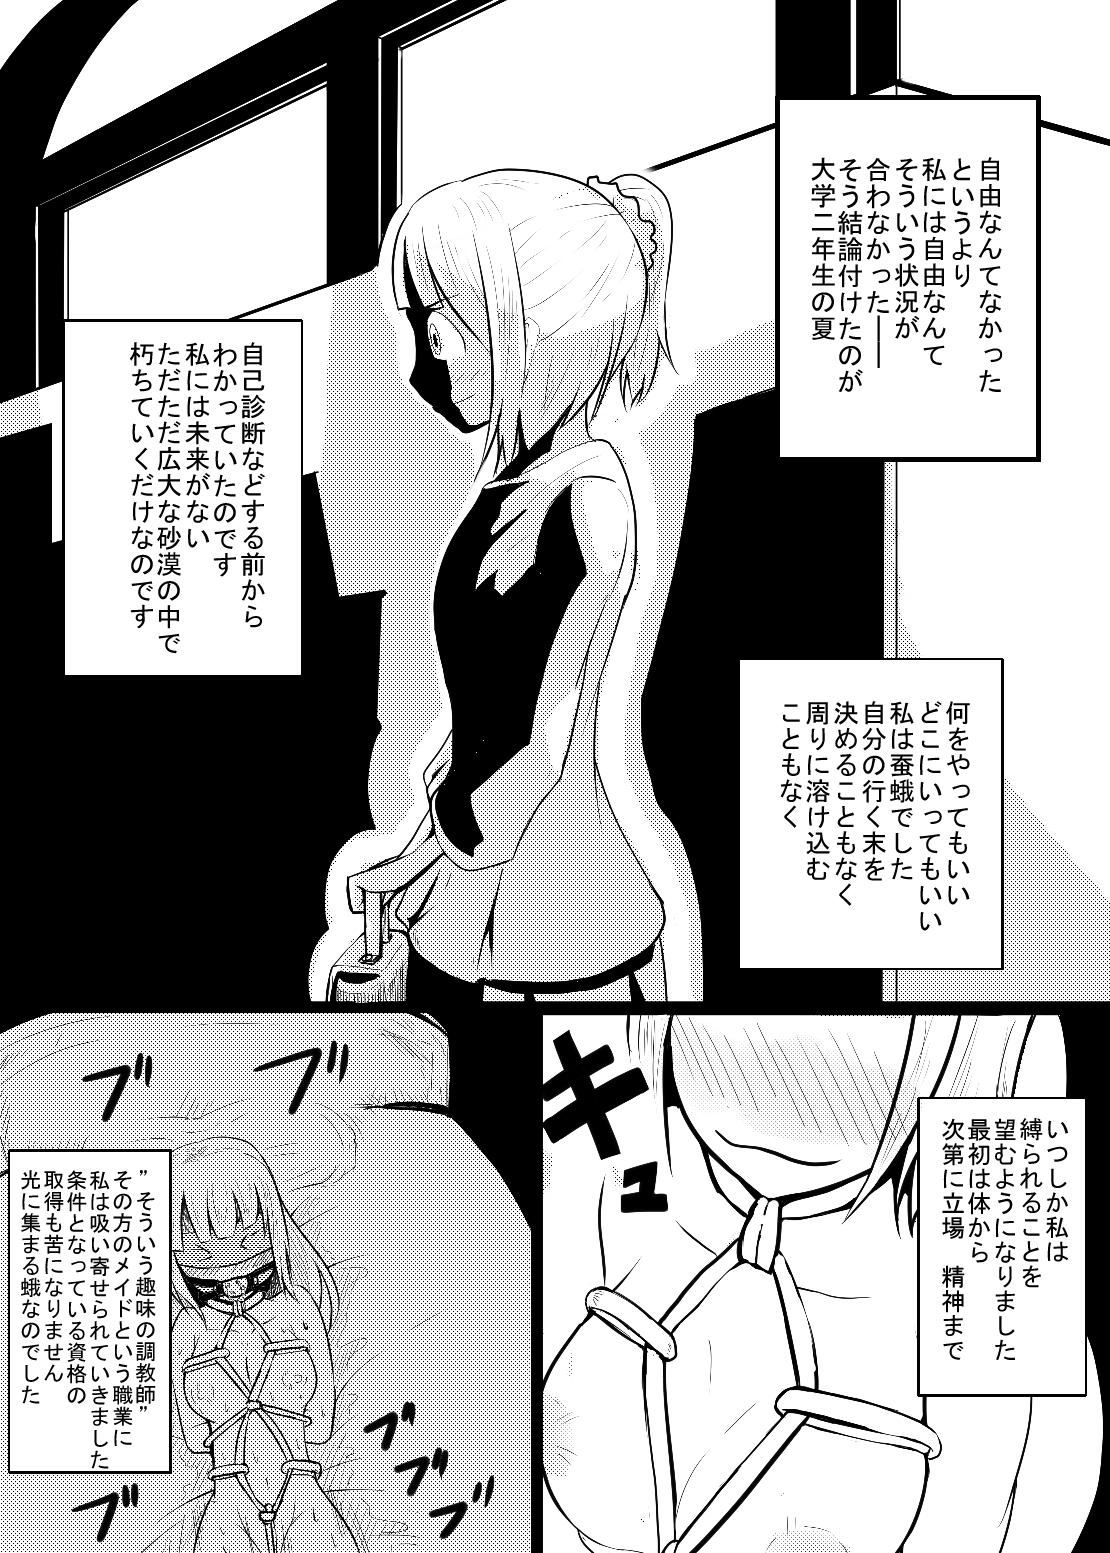 Camshow Maid-san no Chichi o Ookiku Shitari Shishi o Buttagiru dake no Manga Asian - Page 3